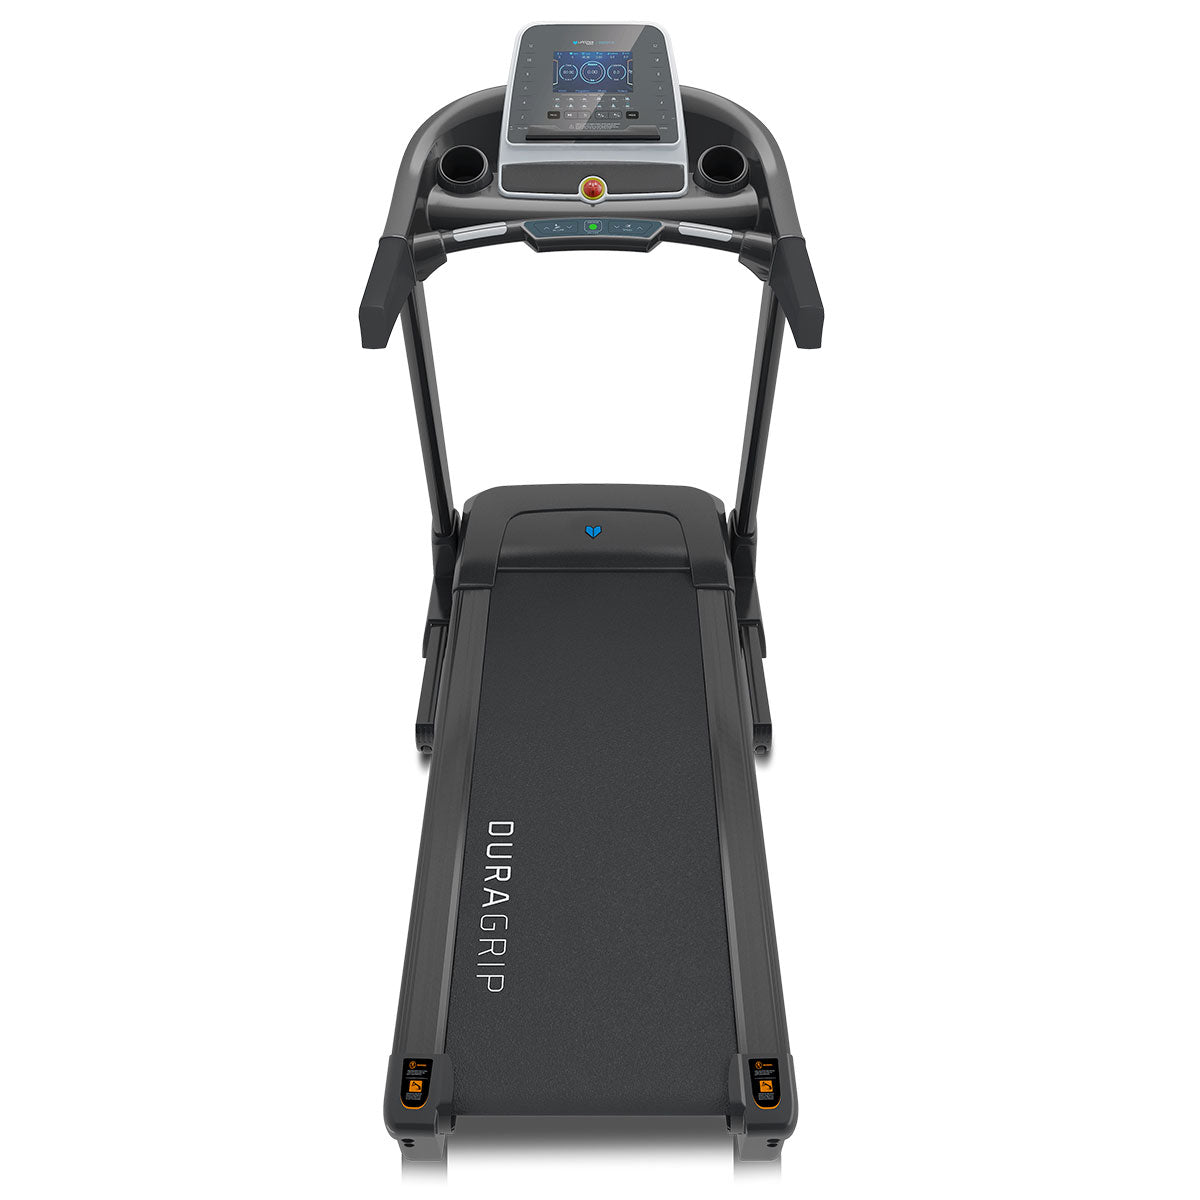 Fitness Boost-R Treadmill